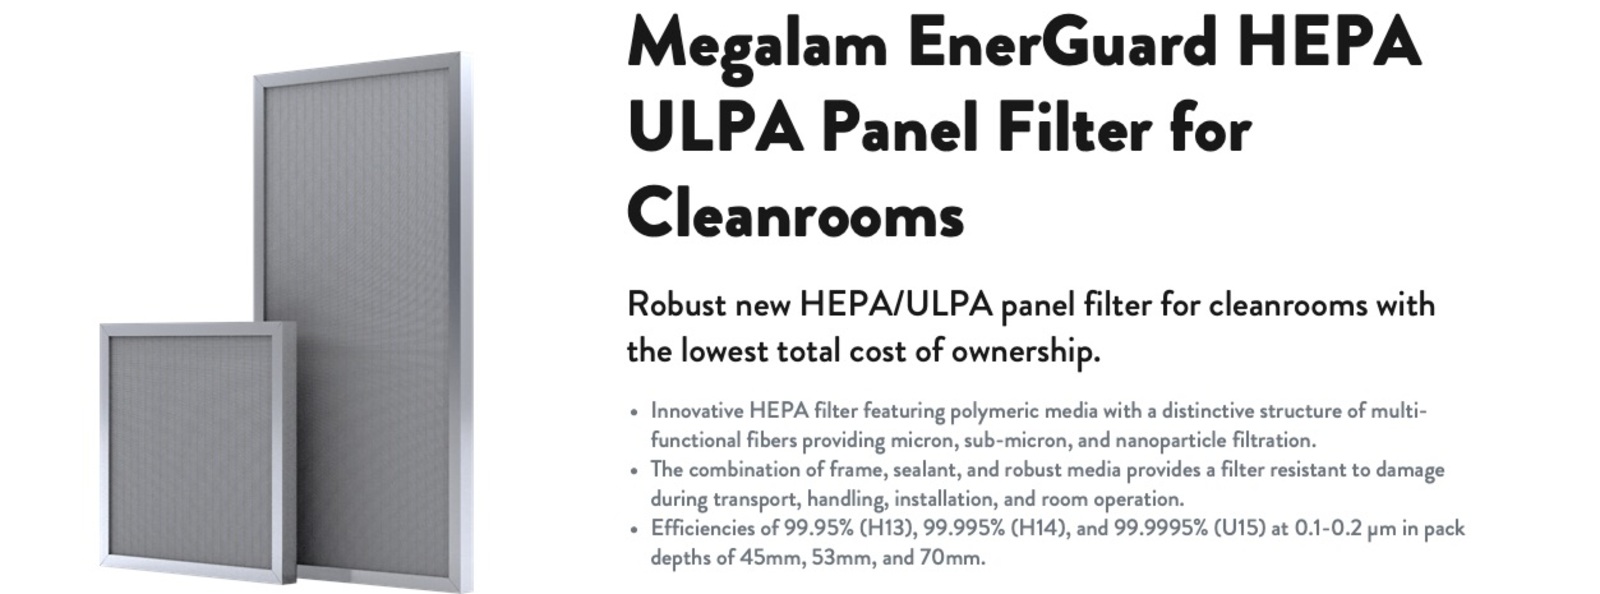 Megalam EnerGuard HEPA ULPA Panel Filter for Cleanrooms